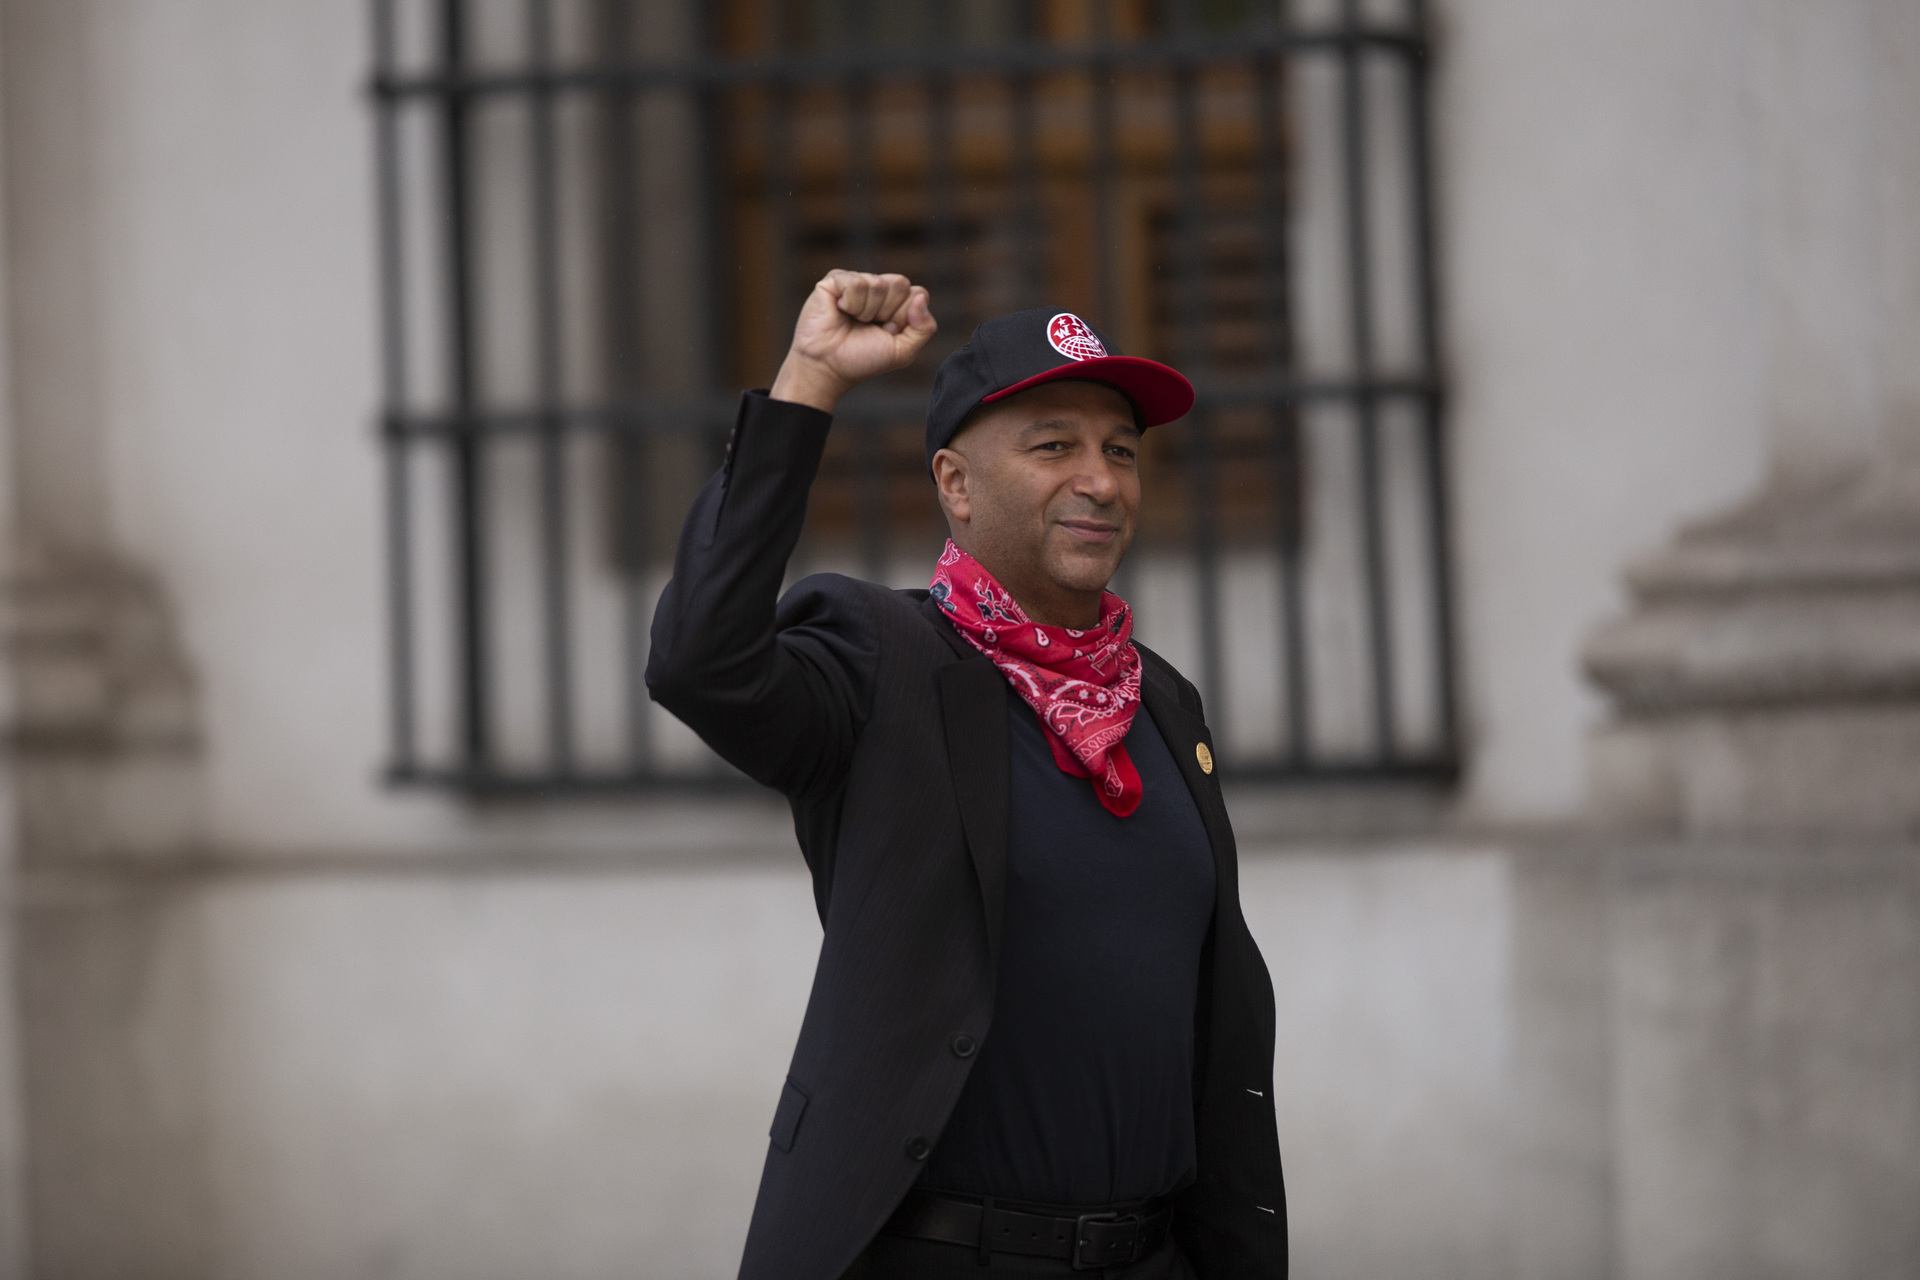 Morello llegó al Palacio de La Moneda (sede de Gobierno) con un pañuelo rojo atado al cuello, una chaqueta negra y una vistosa gorra de beisbol. (EFE)